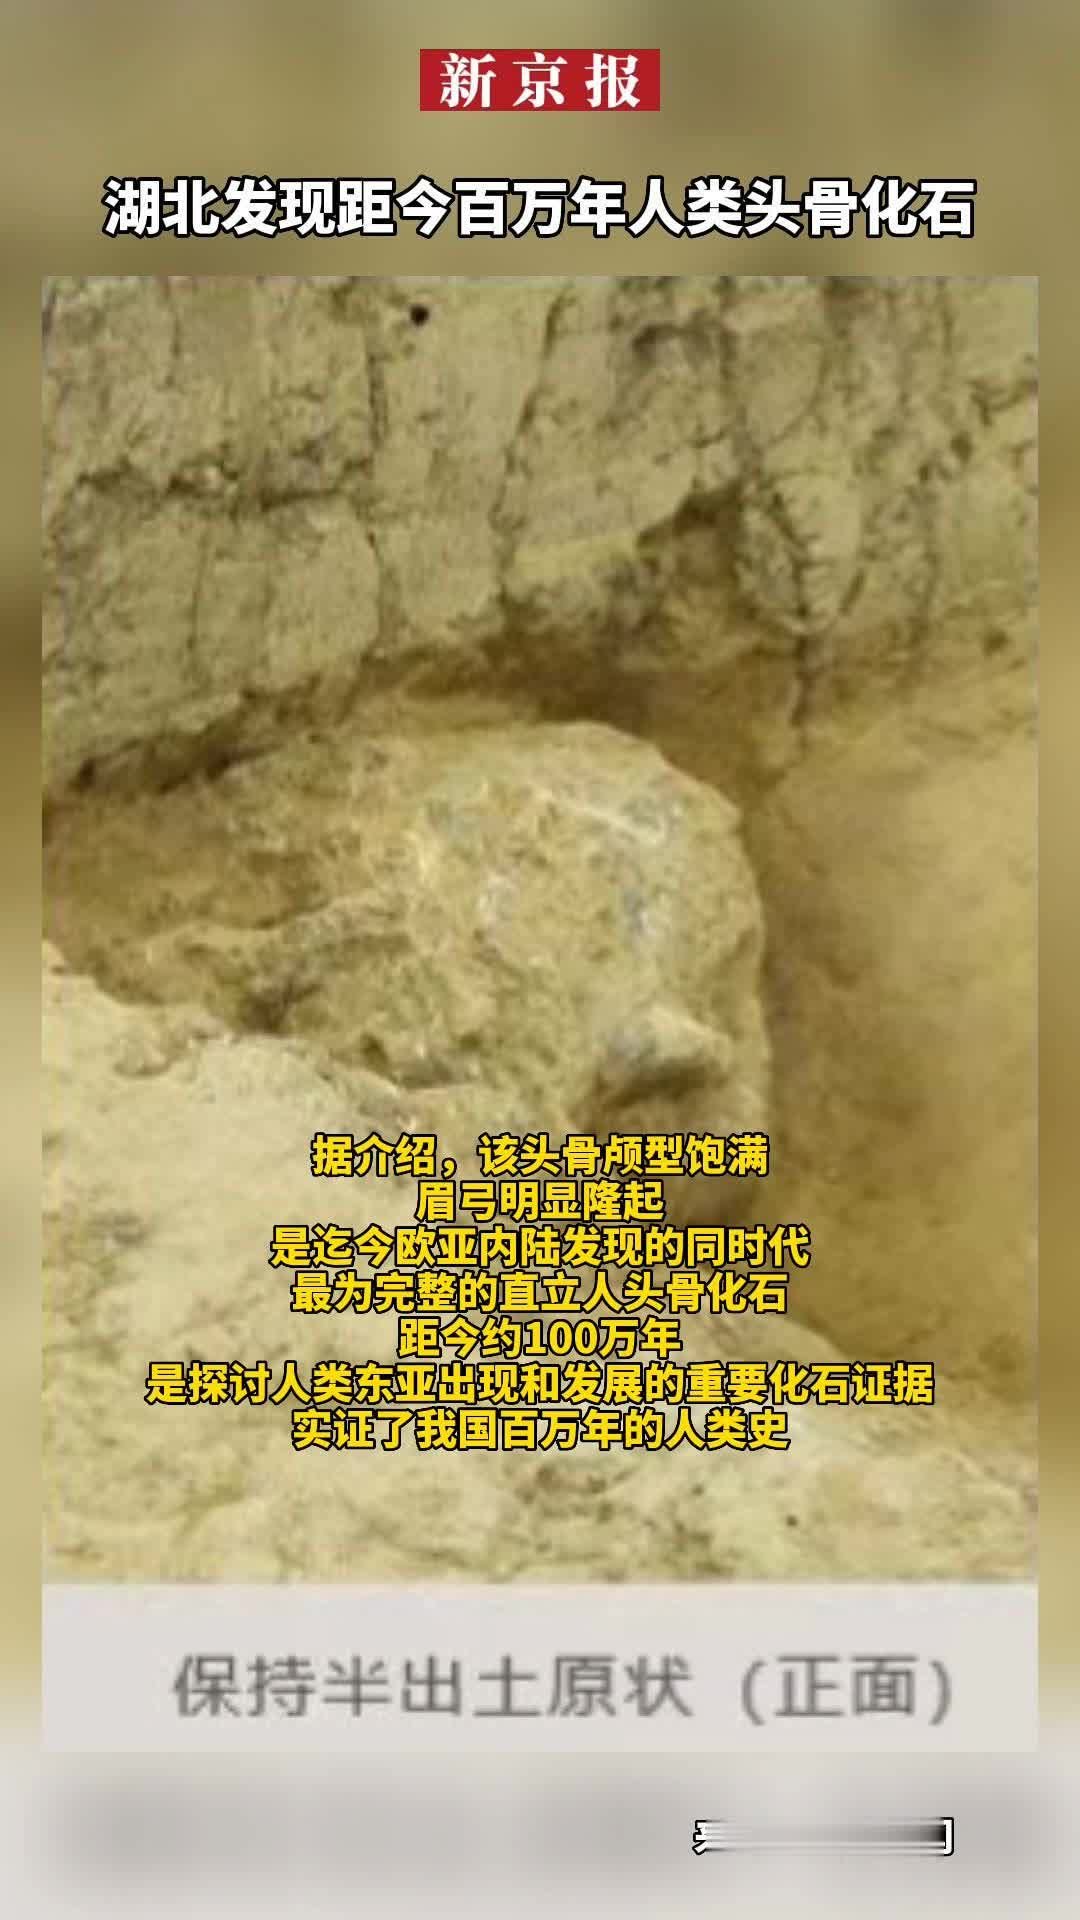 湖北郧县人遗址发现第三具古人类头骨化石 距今百万年——上海热线教育频道